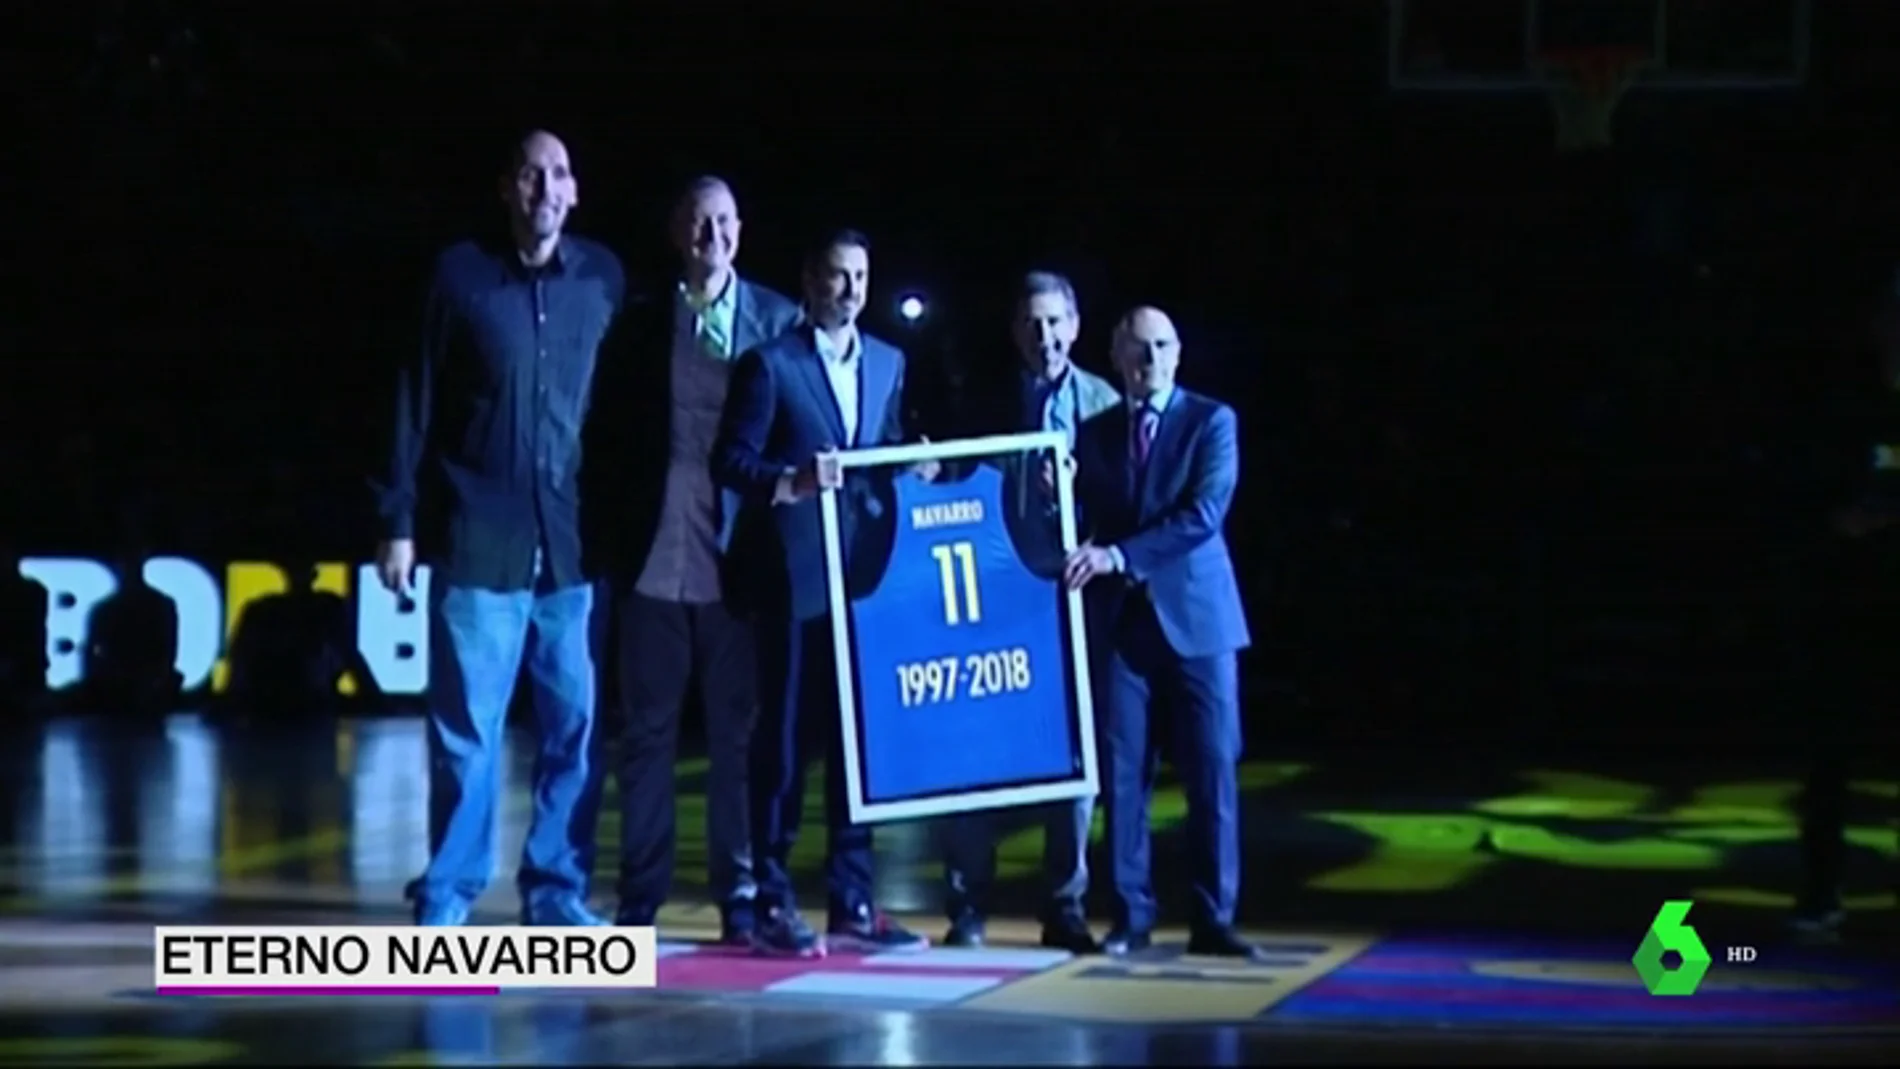 El Barcelona Lassa rinde un emotivo homenaje a Juan Carlos Navarro: "